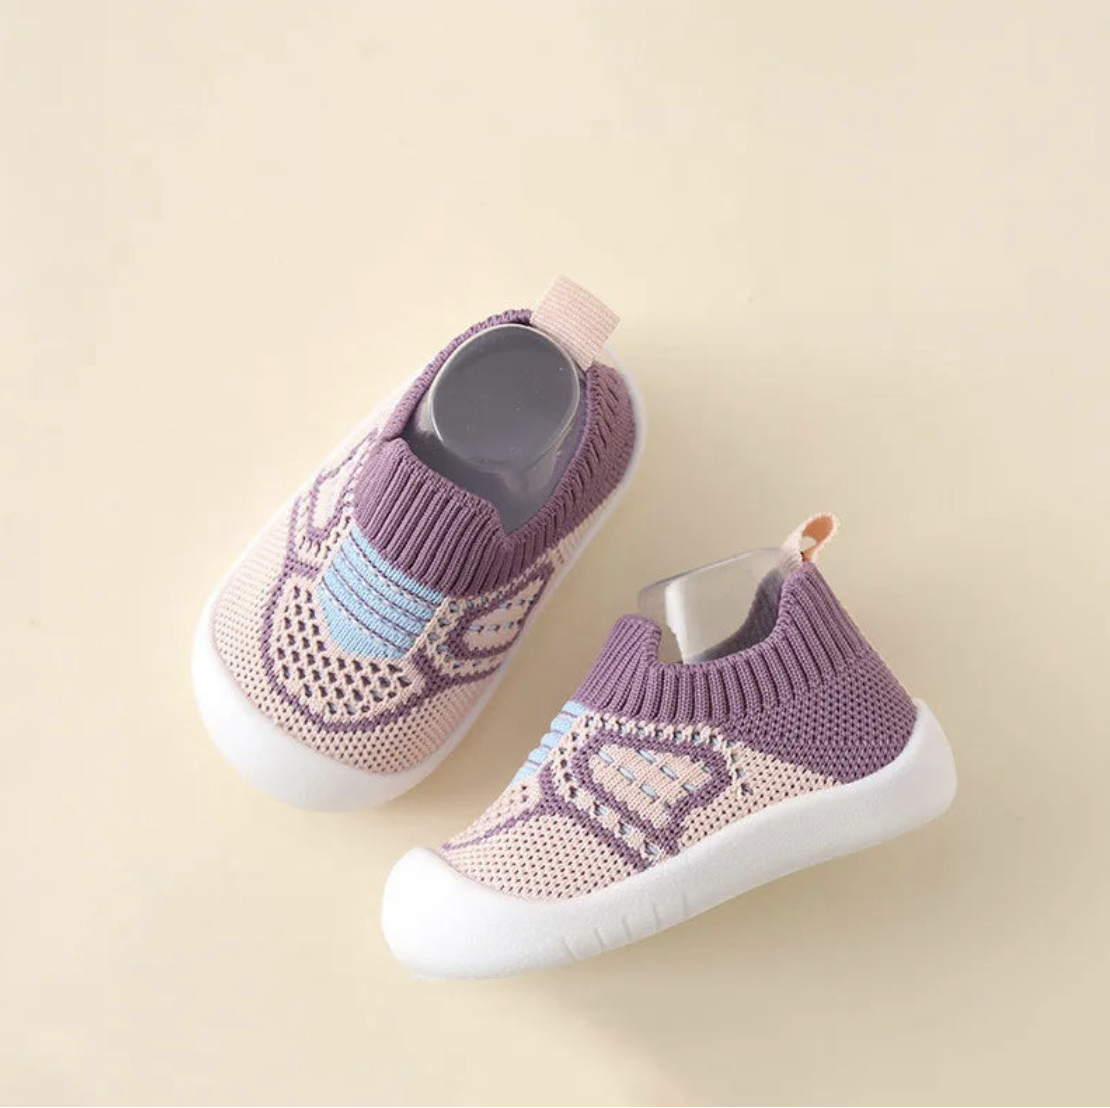 Chaussure souple basket montante bébé 0 à 12 mois, modèle strass ar